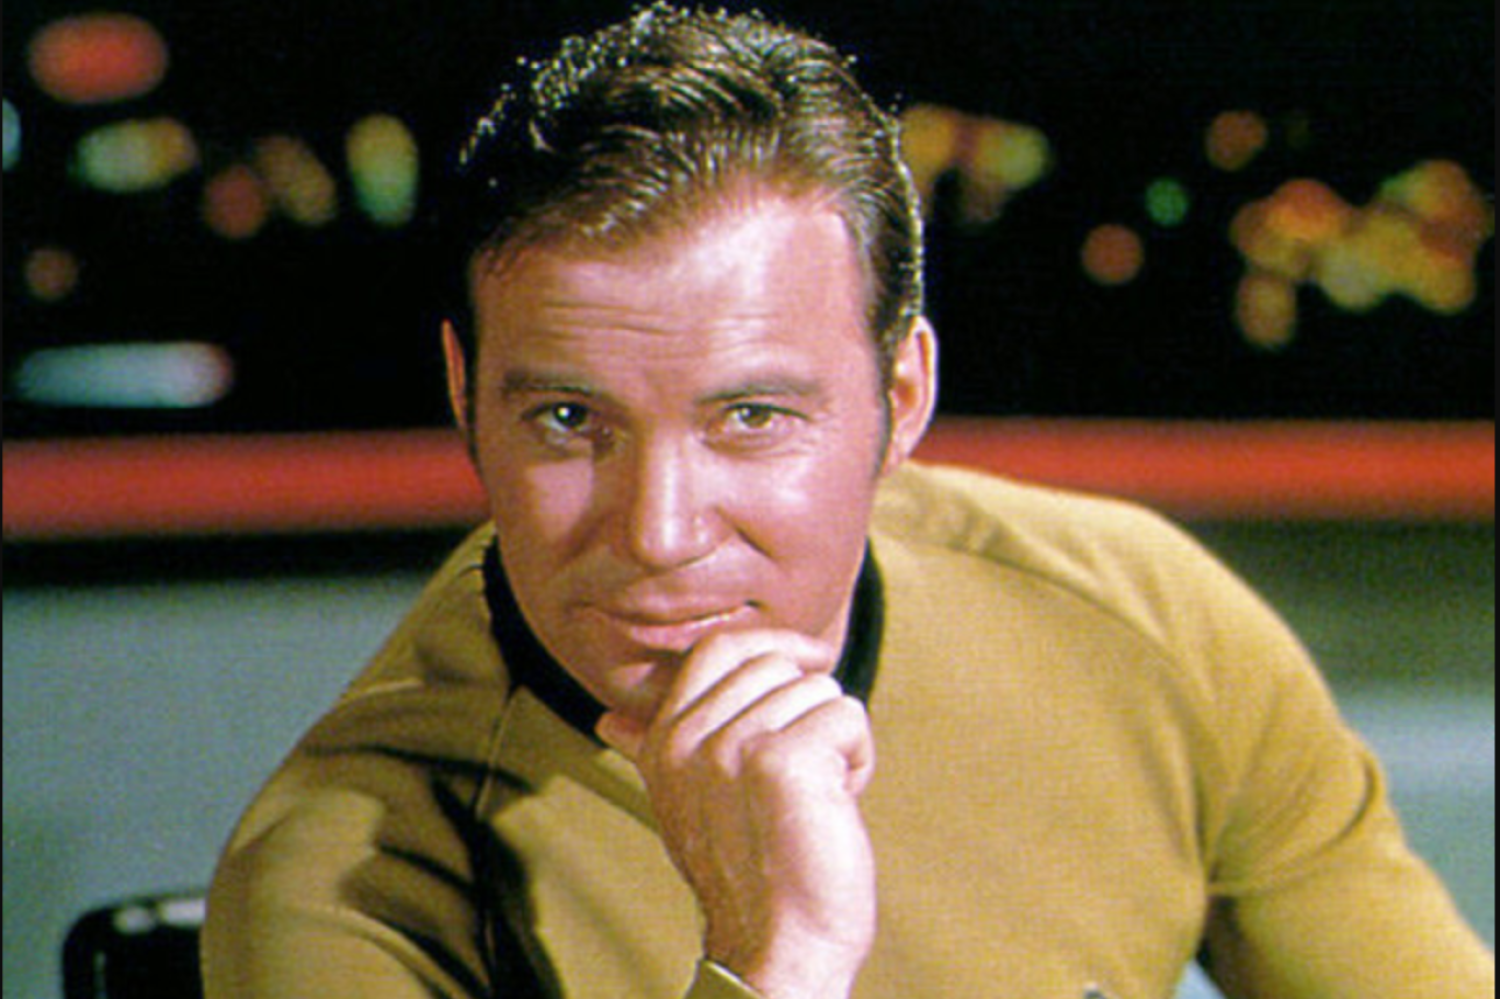 Uzay Yolu efsanesi William Shatner, Blue Origin'le uzaya gitmeden önce "Geri dönemezsem de kaybedecek neyim var?" demişti (Paramount)